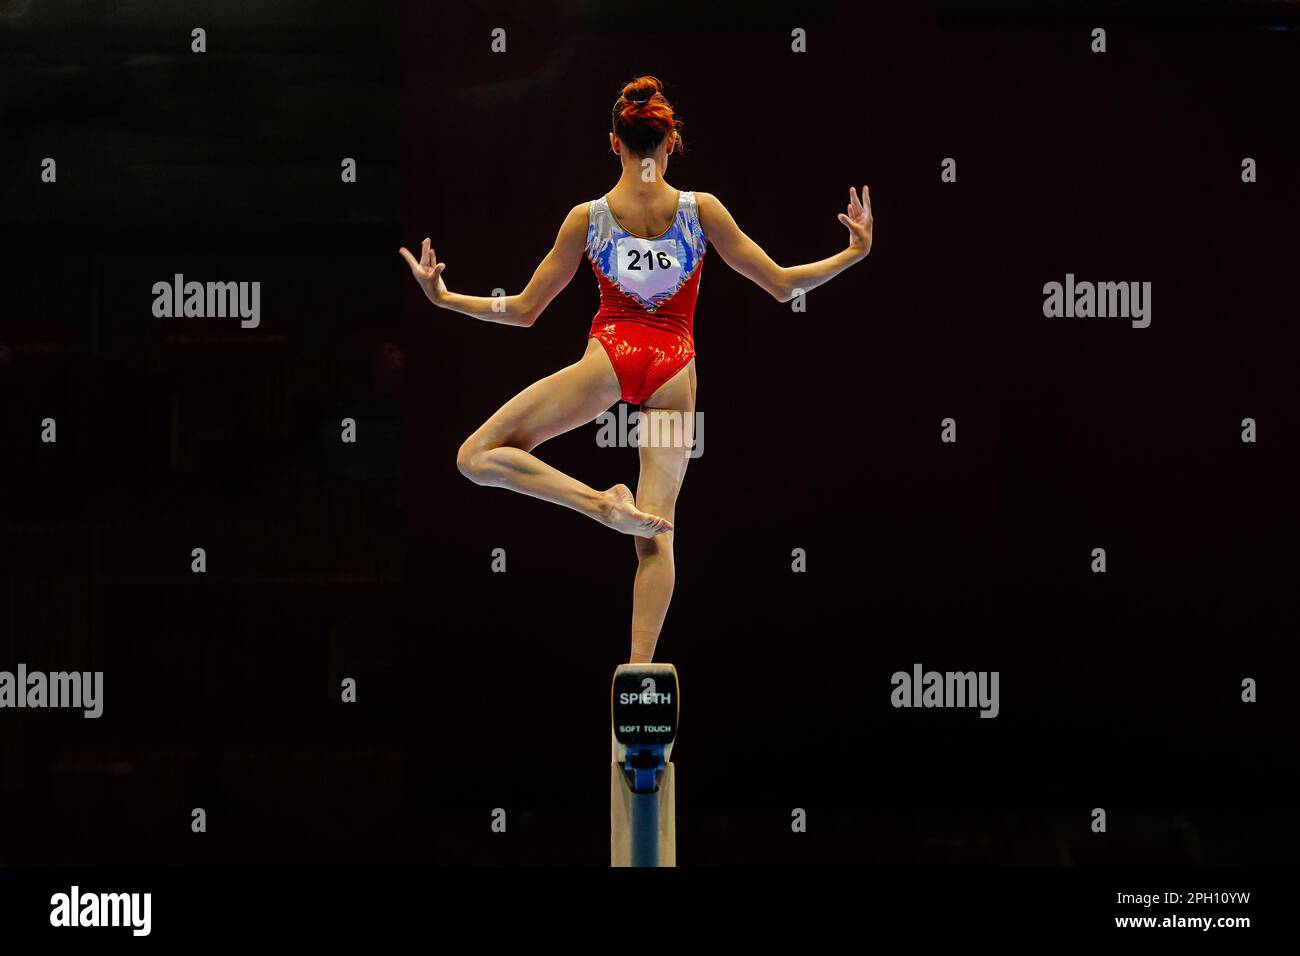 Eine Turnerin, die auf schwarzem Hintergrund Sport macht, das Modell Spieth Balance Beam Soft Touch, Sommersportspiele Stockfoto